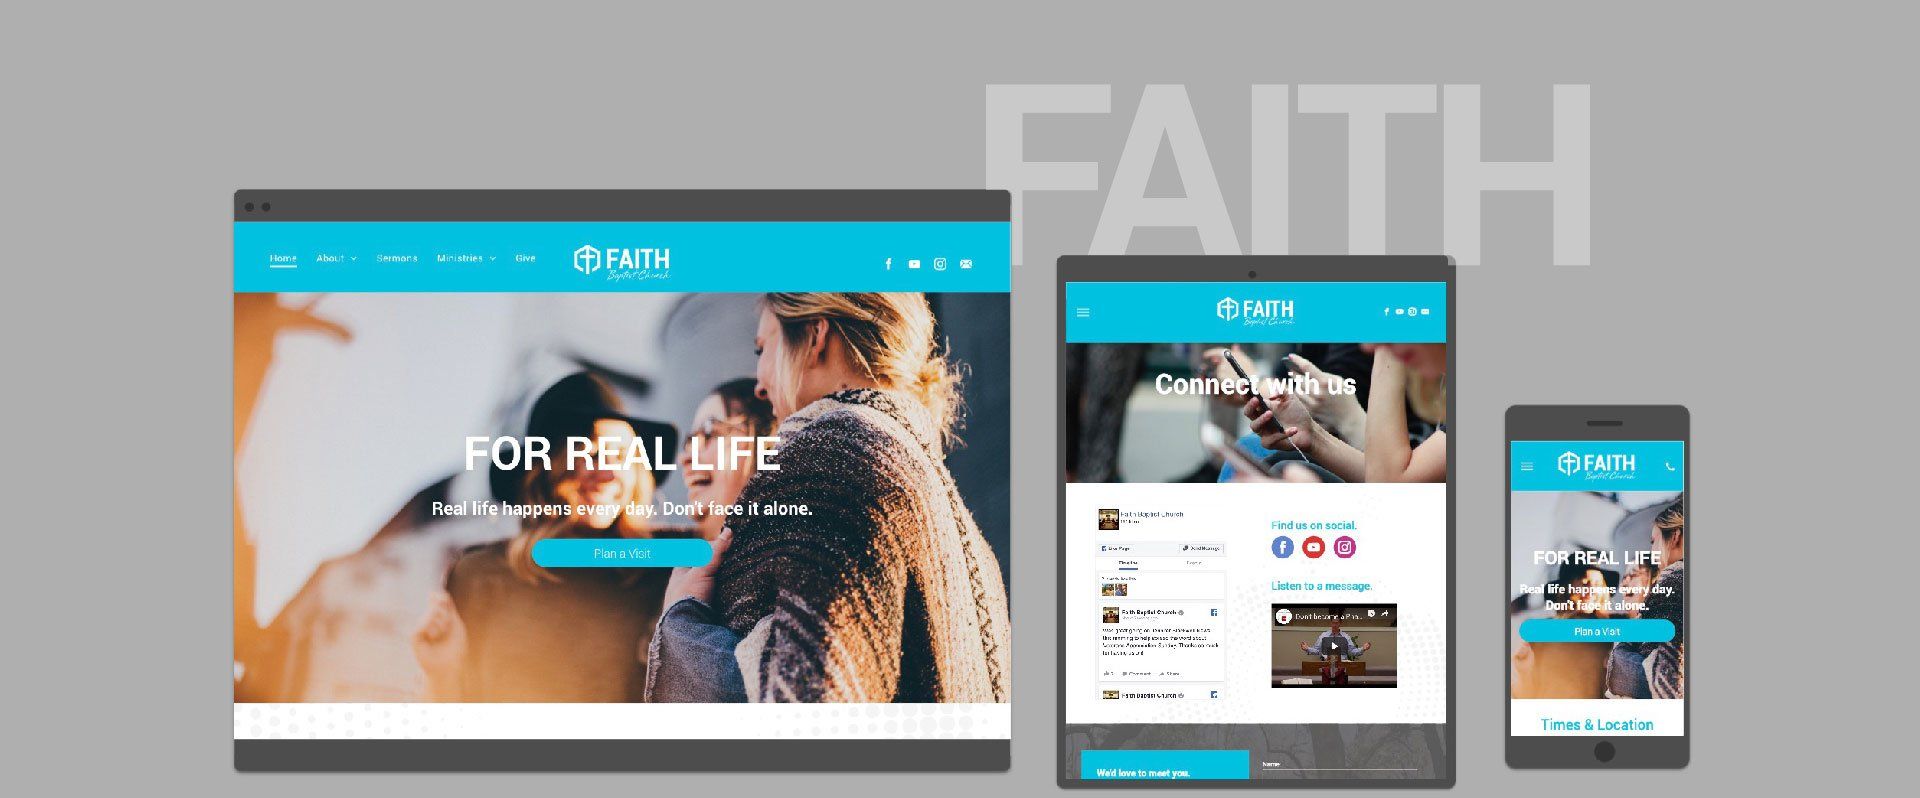 spirelight web faith church website template